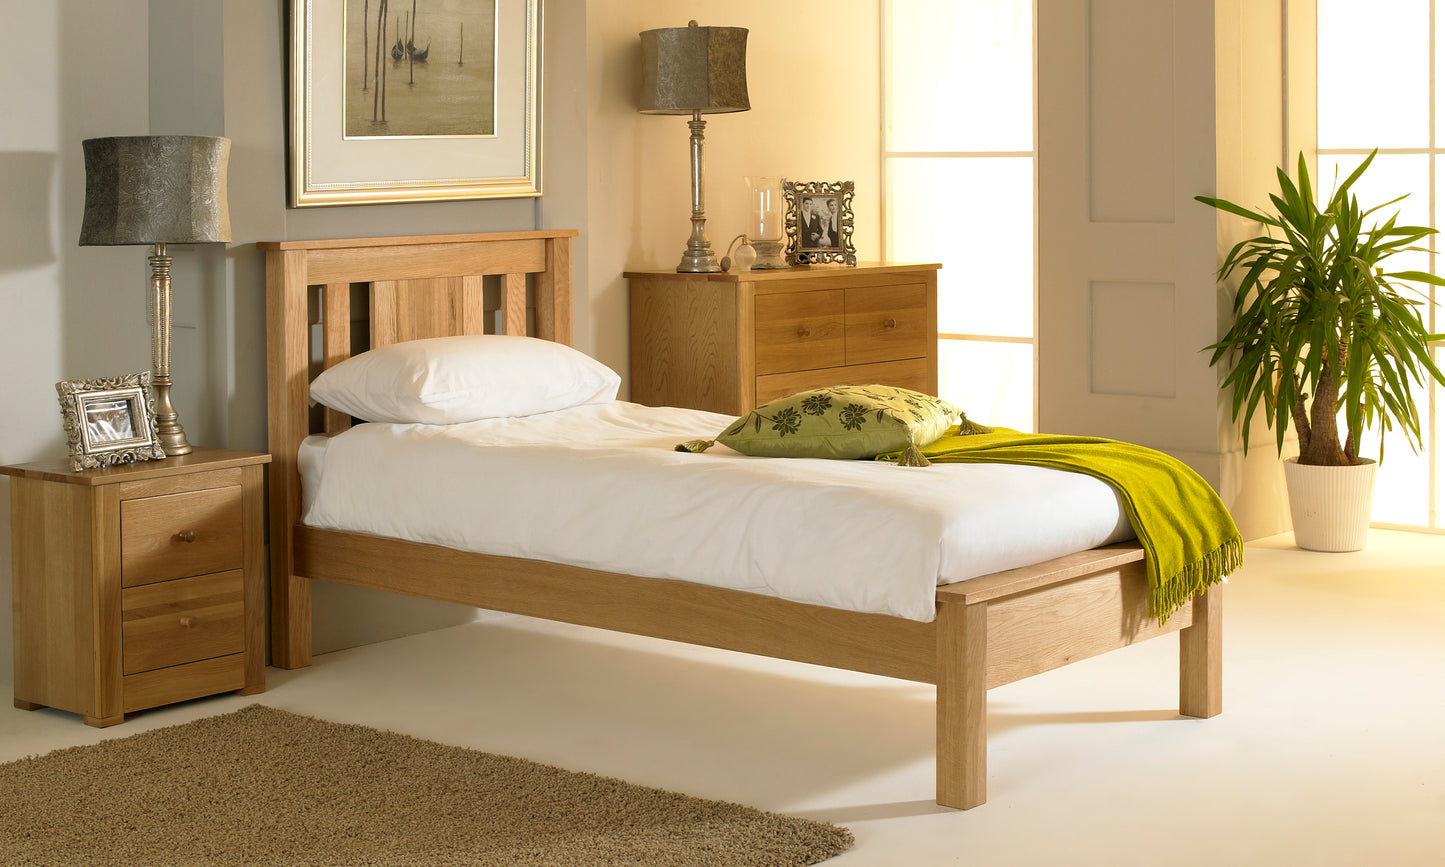 Cavello Bed Frame - 3ft Single - Natural Oak